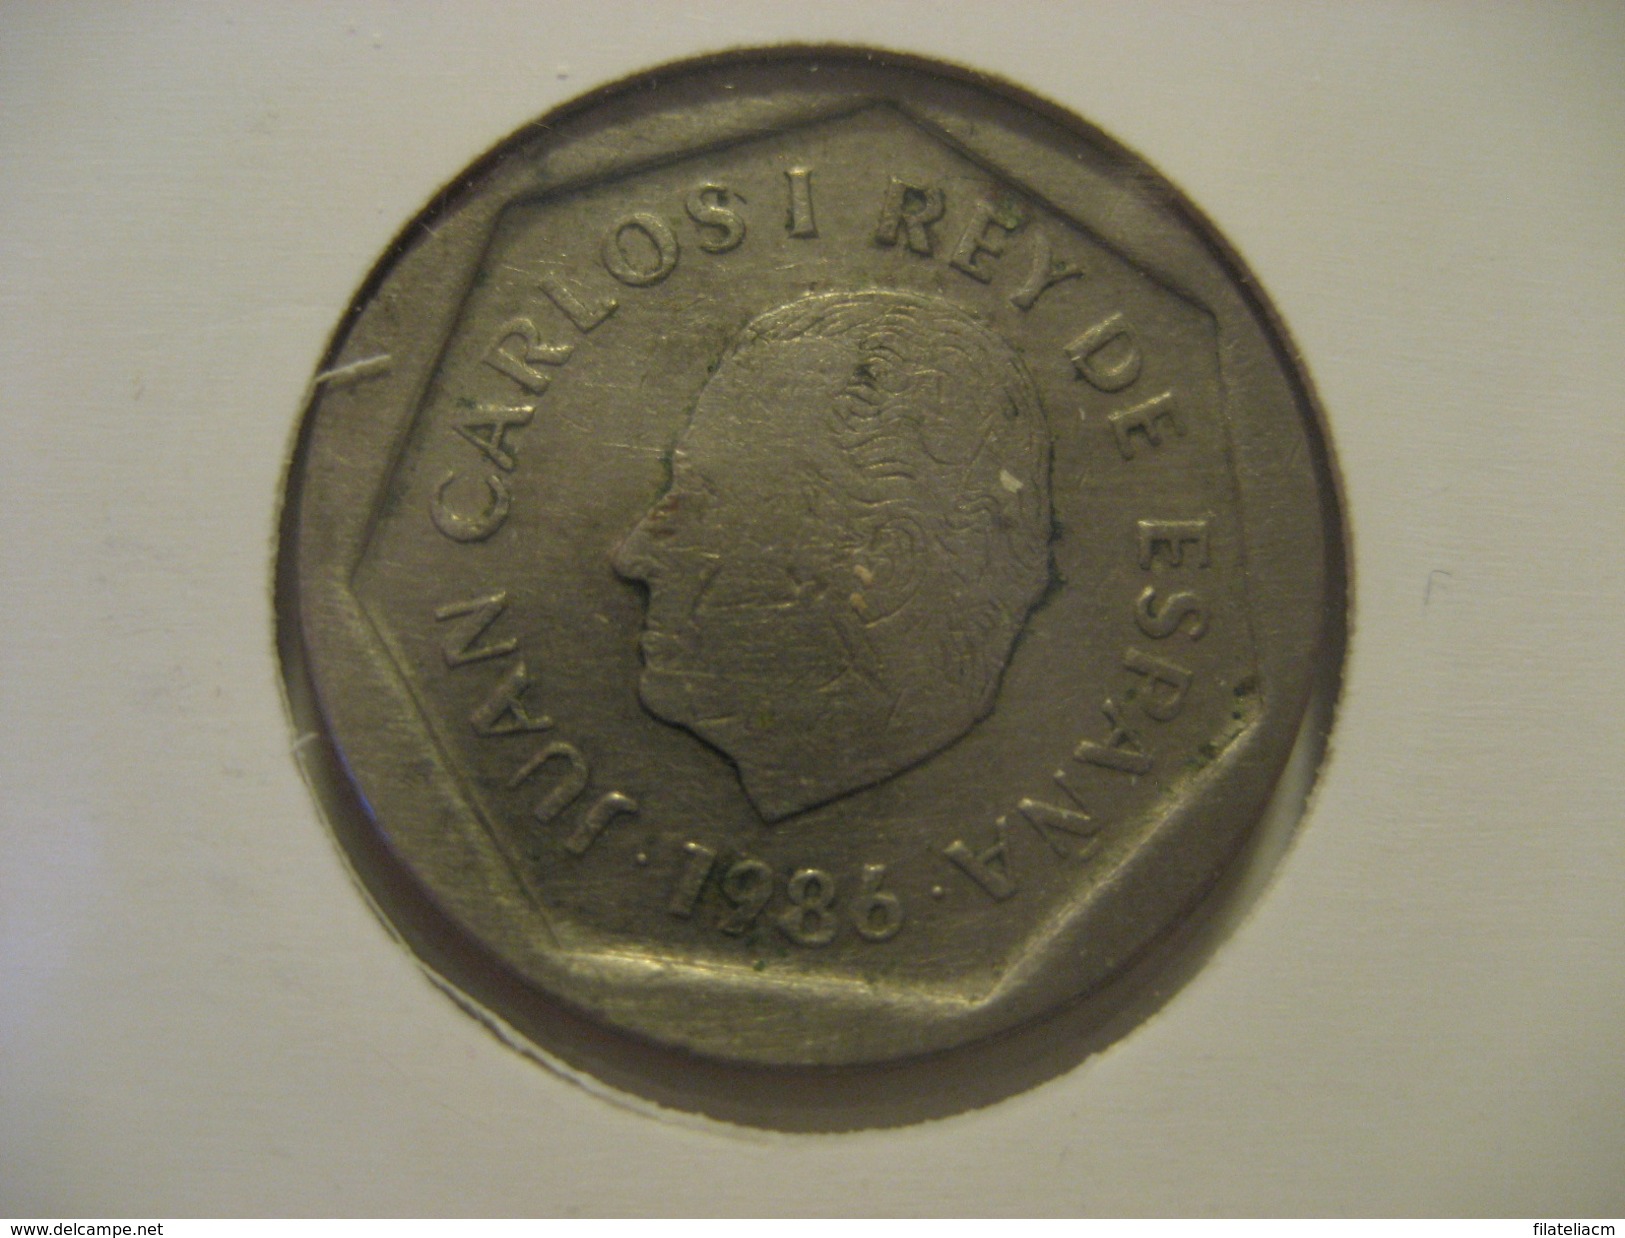 200 Pesetas 1986 SPAIN Juan Carlos I Coin - 200 Pesetas